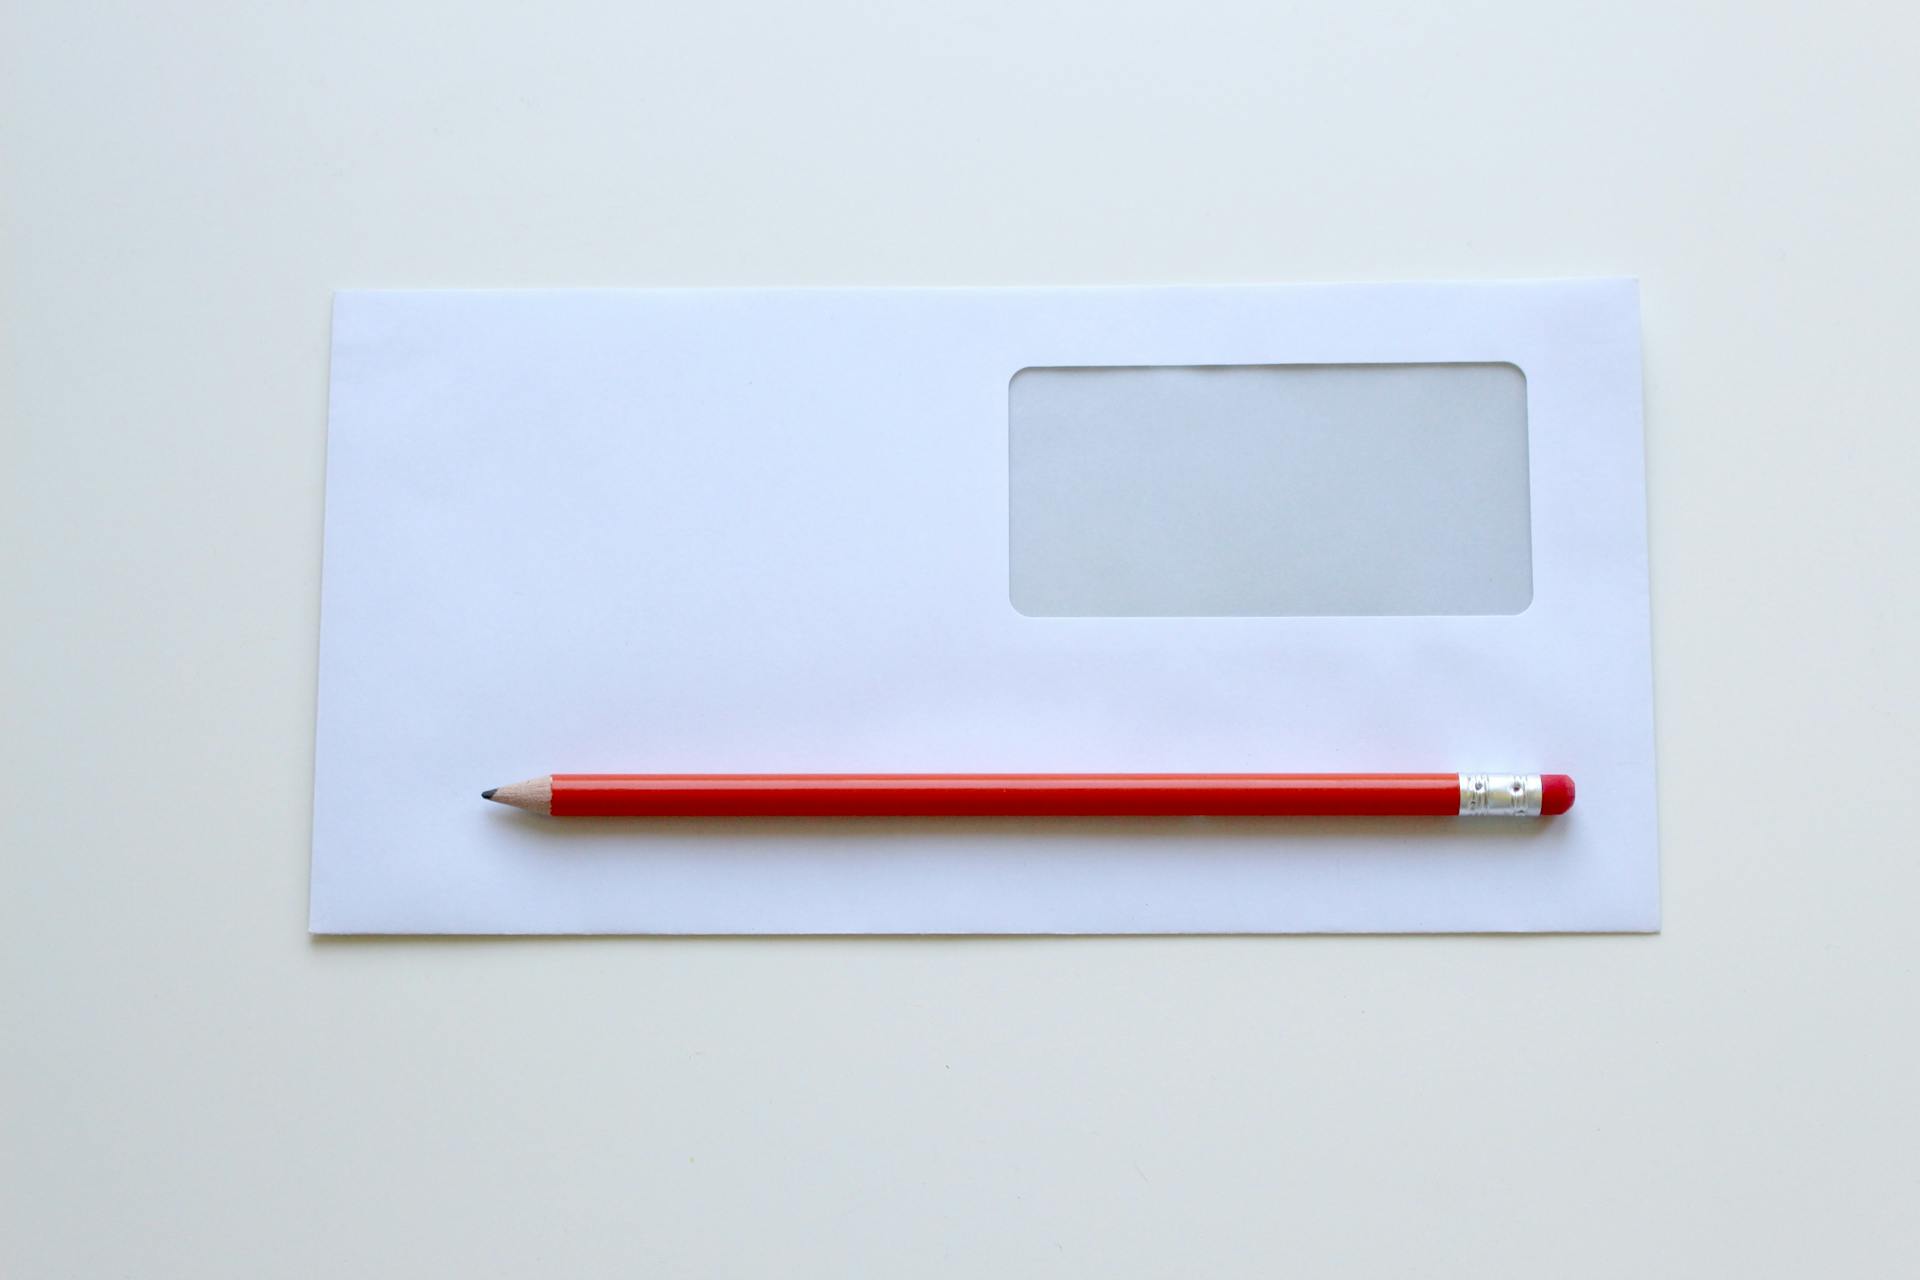 Un crayon rouge sur une enveloppe blanche à fenêtre | Source : Pexels